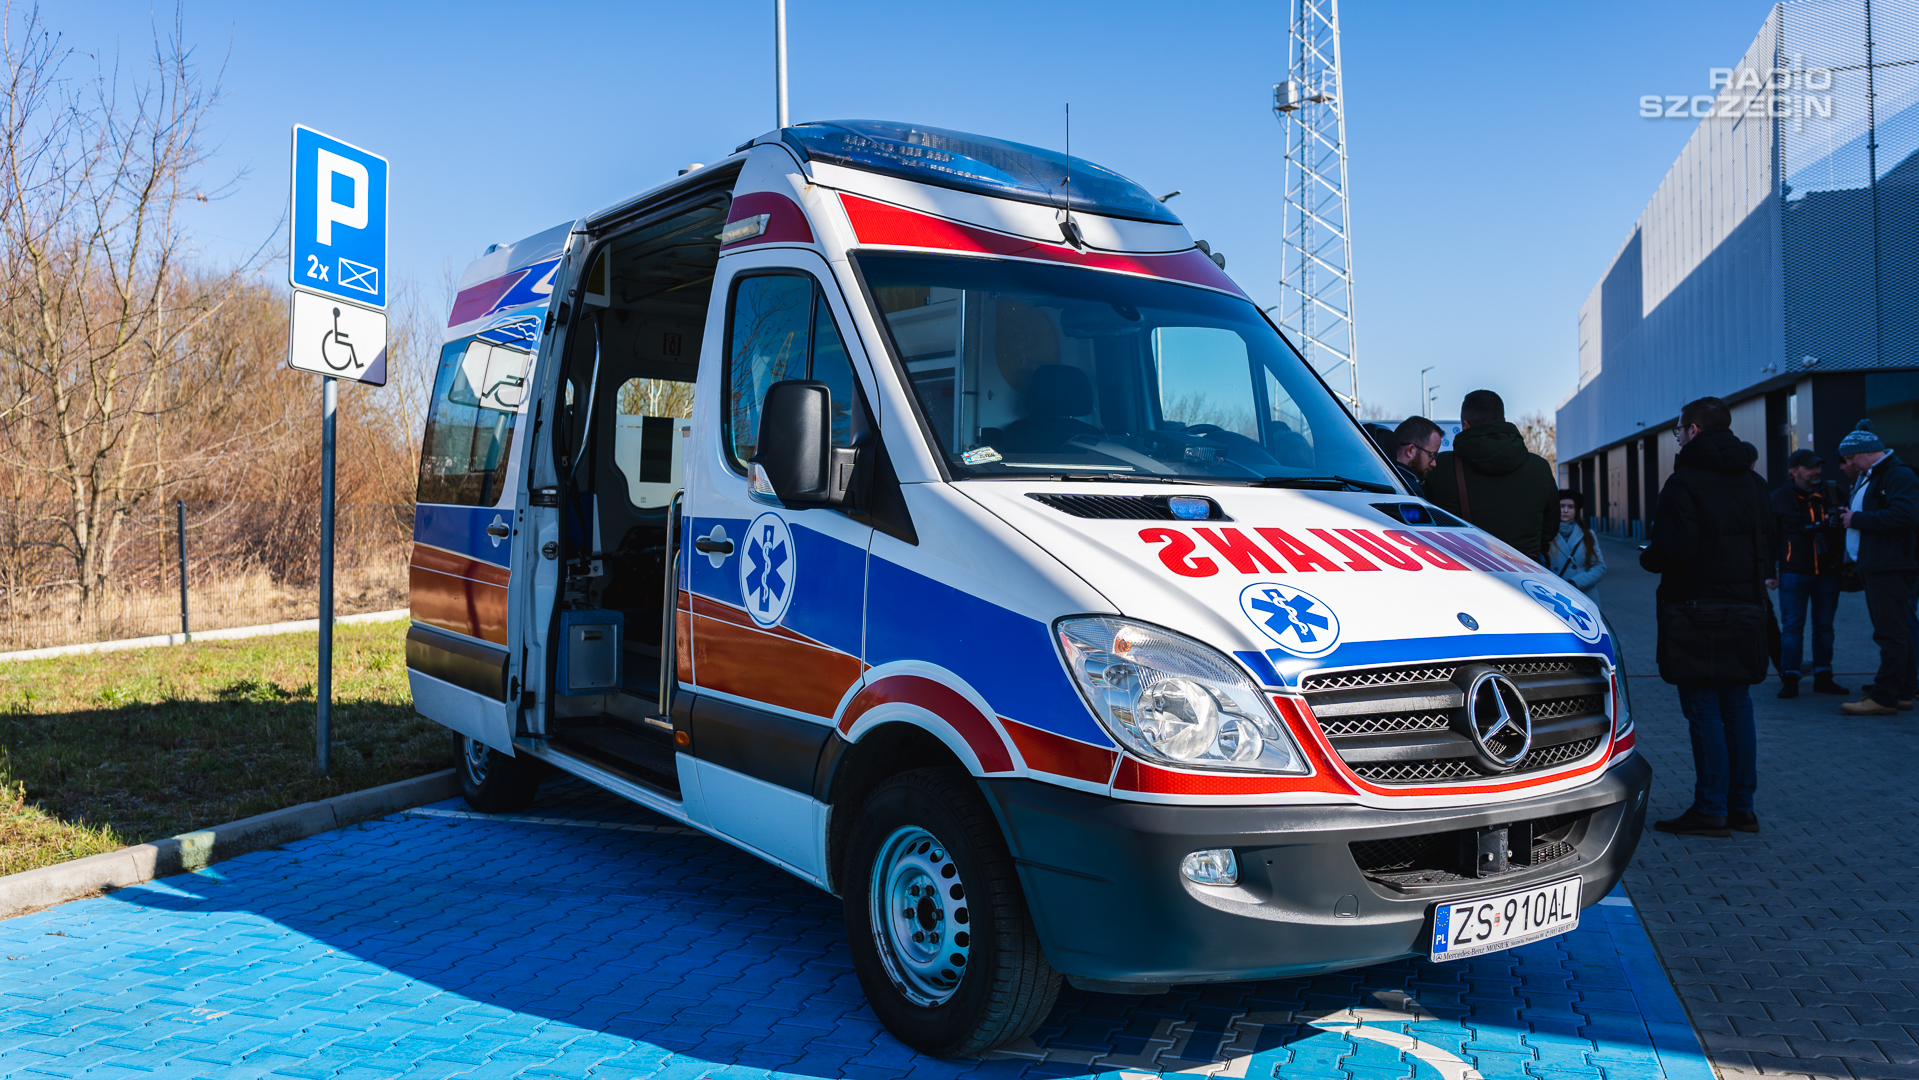 Symulator przedziału kierowcy ambulansu będzie wkrótce do dyspozycji ratowników w Ośrodku Symulacji Medycznych WSPR w Szczecinie.